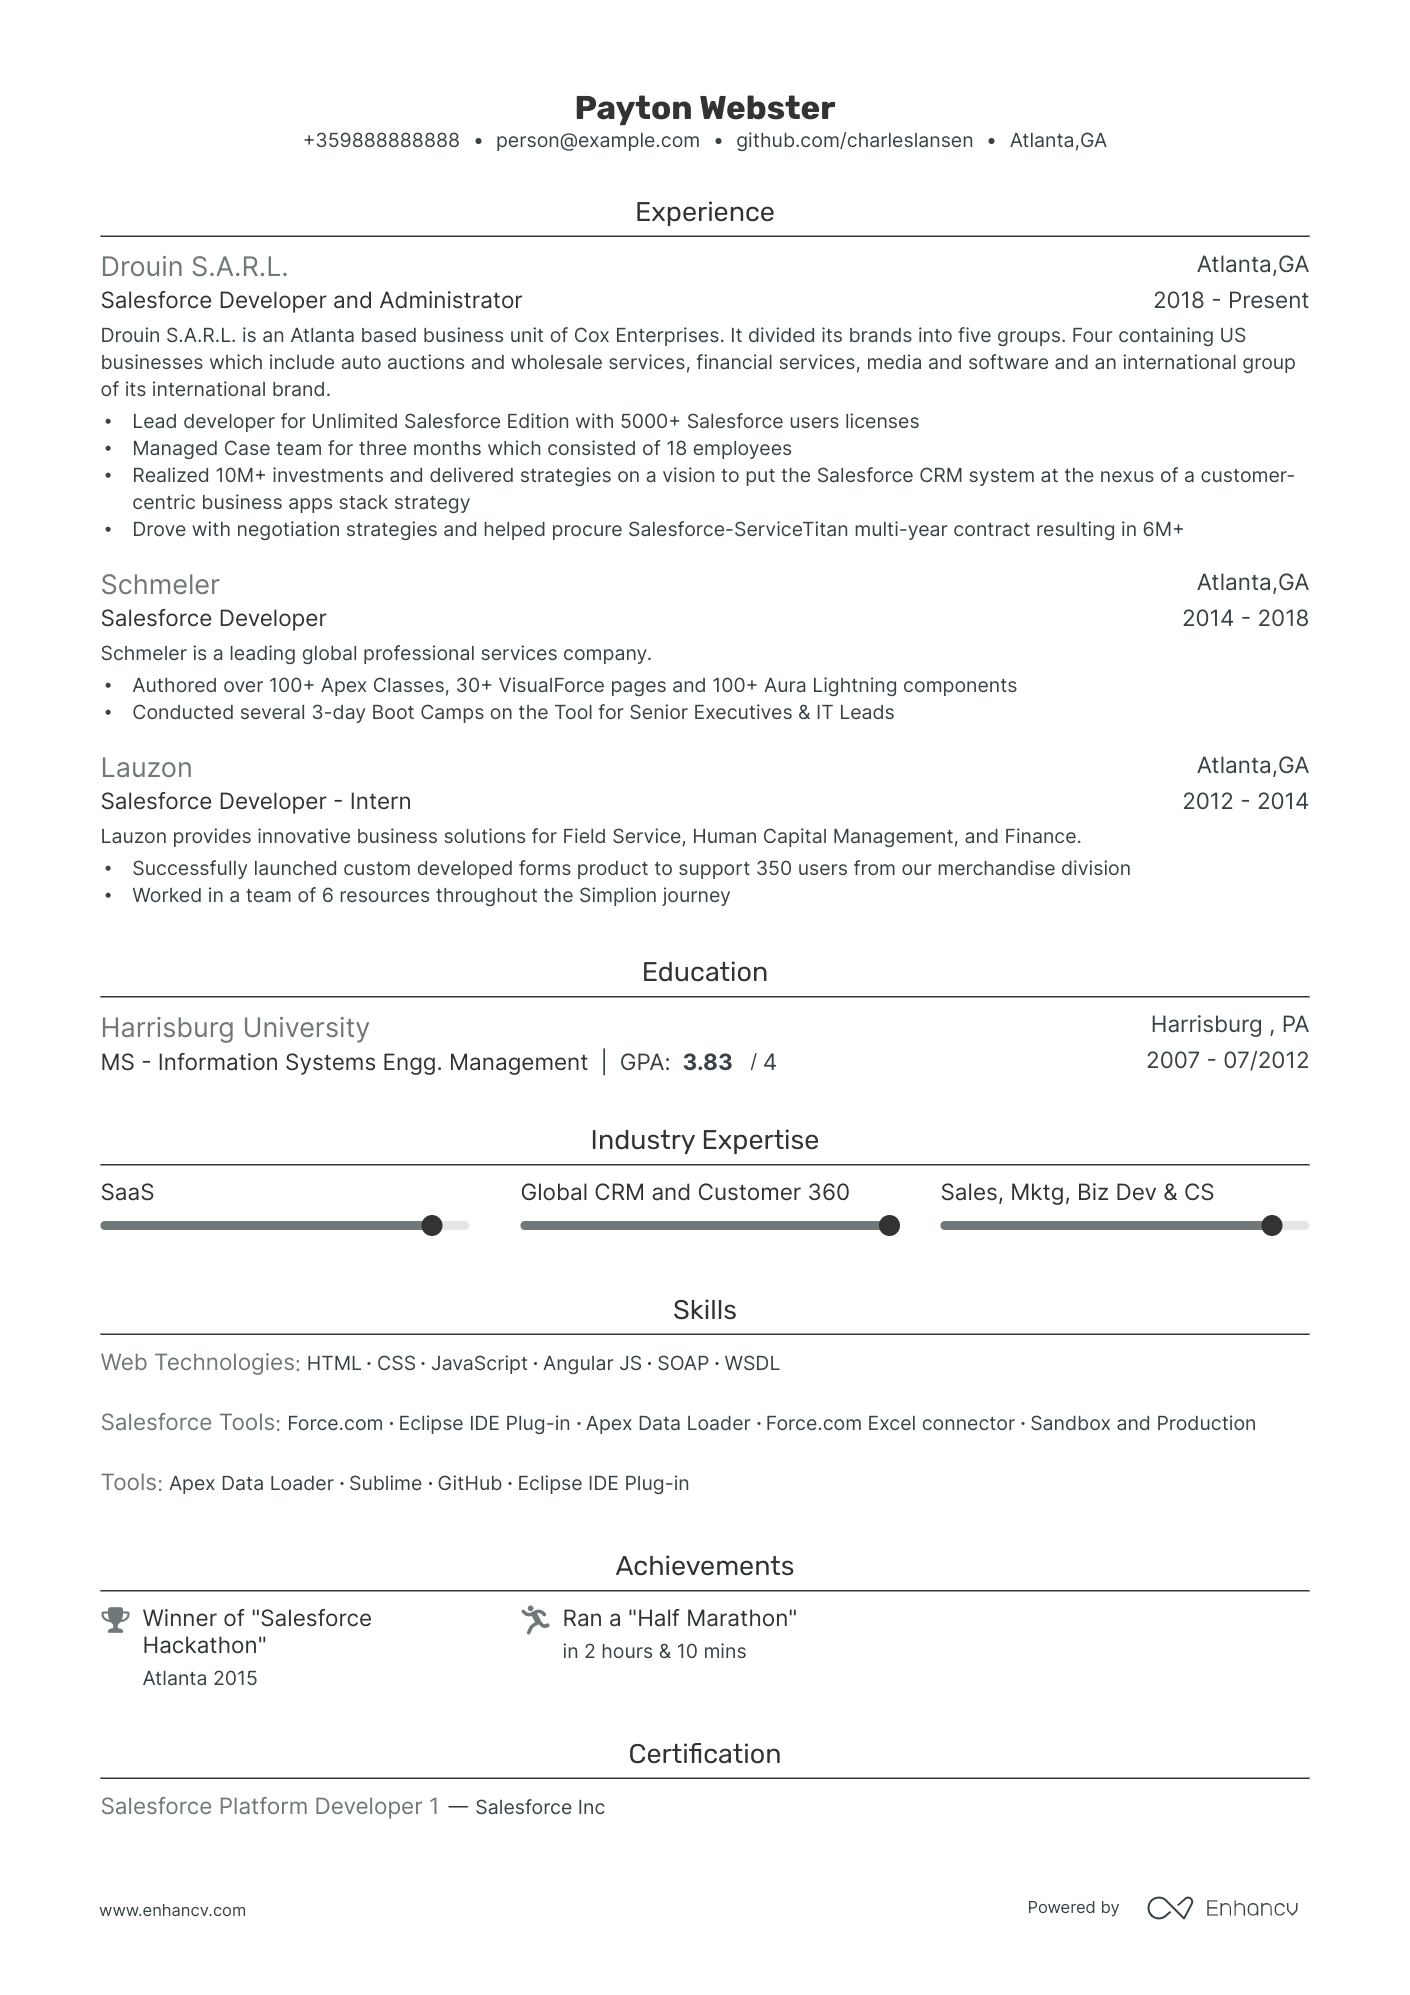 sample resume for salesforce developer